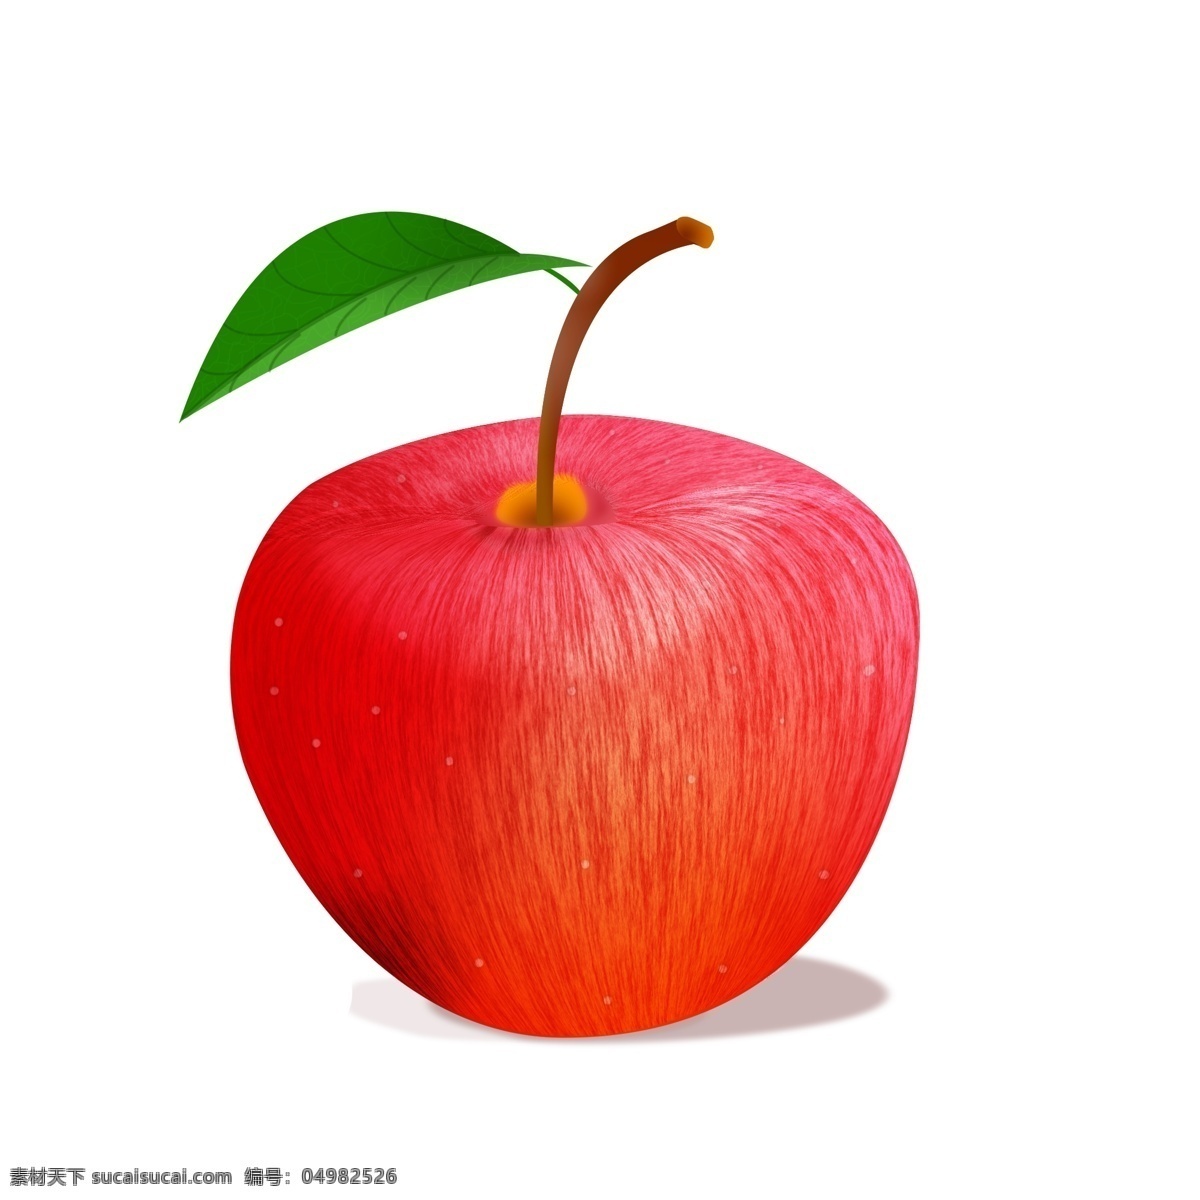 苹果 绿叶 鼠 绘 apple 卡通画 水果 静物 绿叶苹果 水谷 鼠绘水果